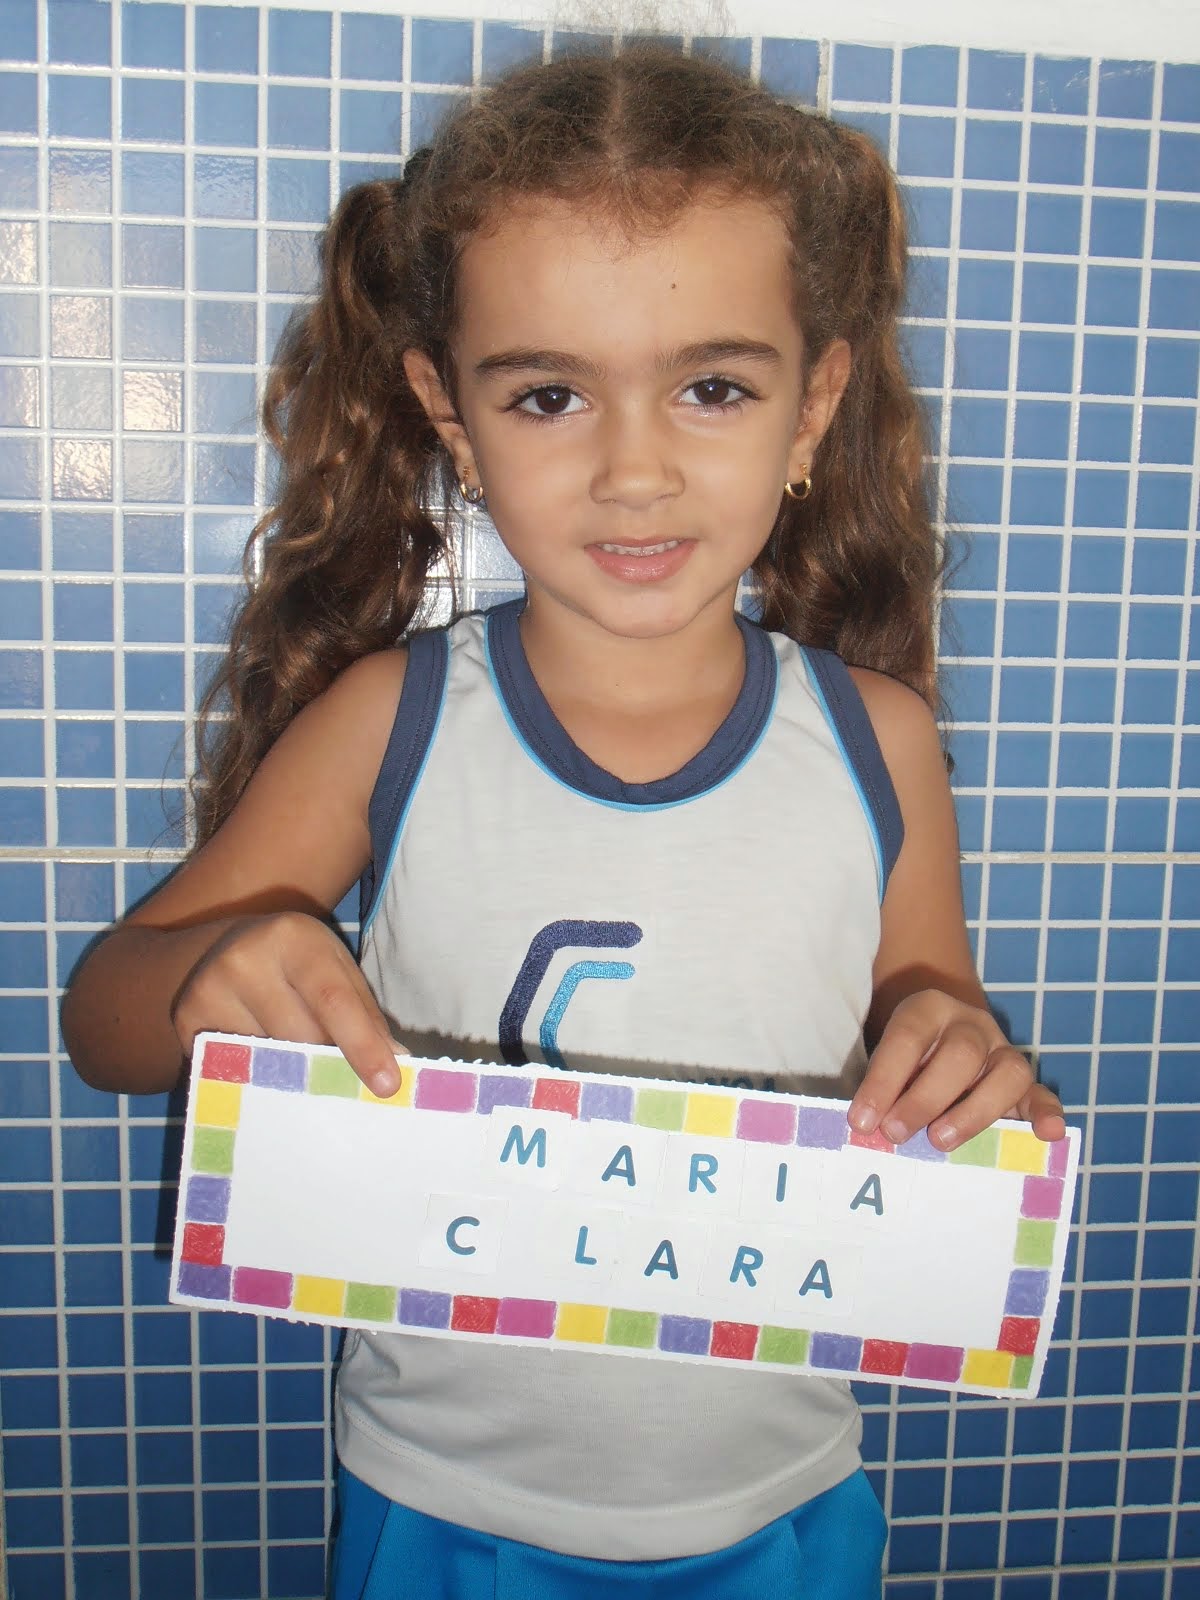 MARIA CLARA